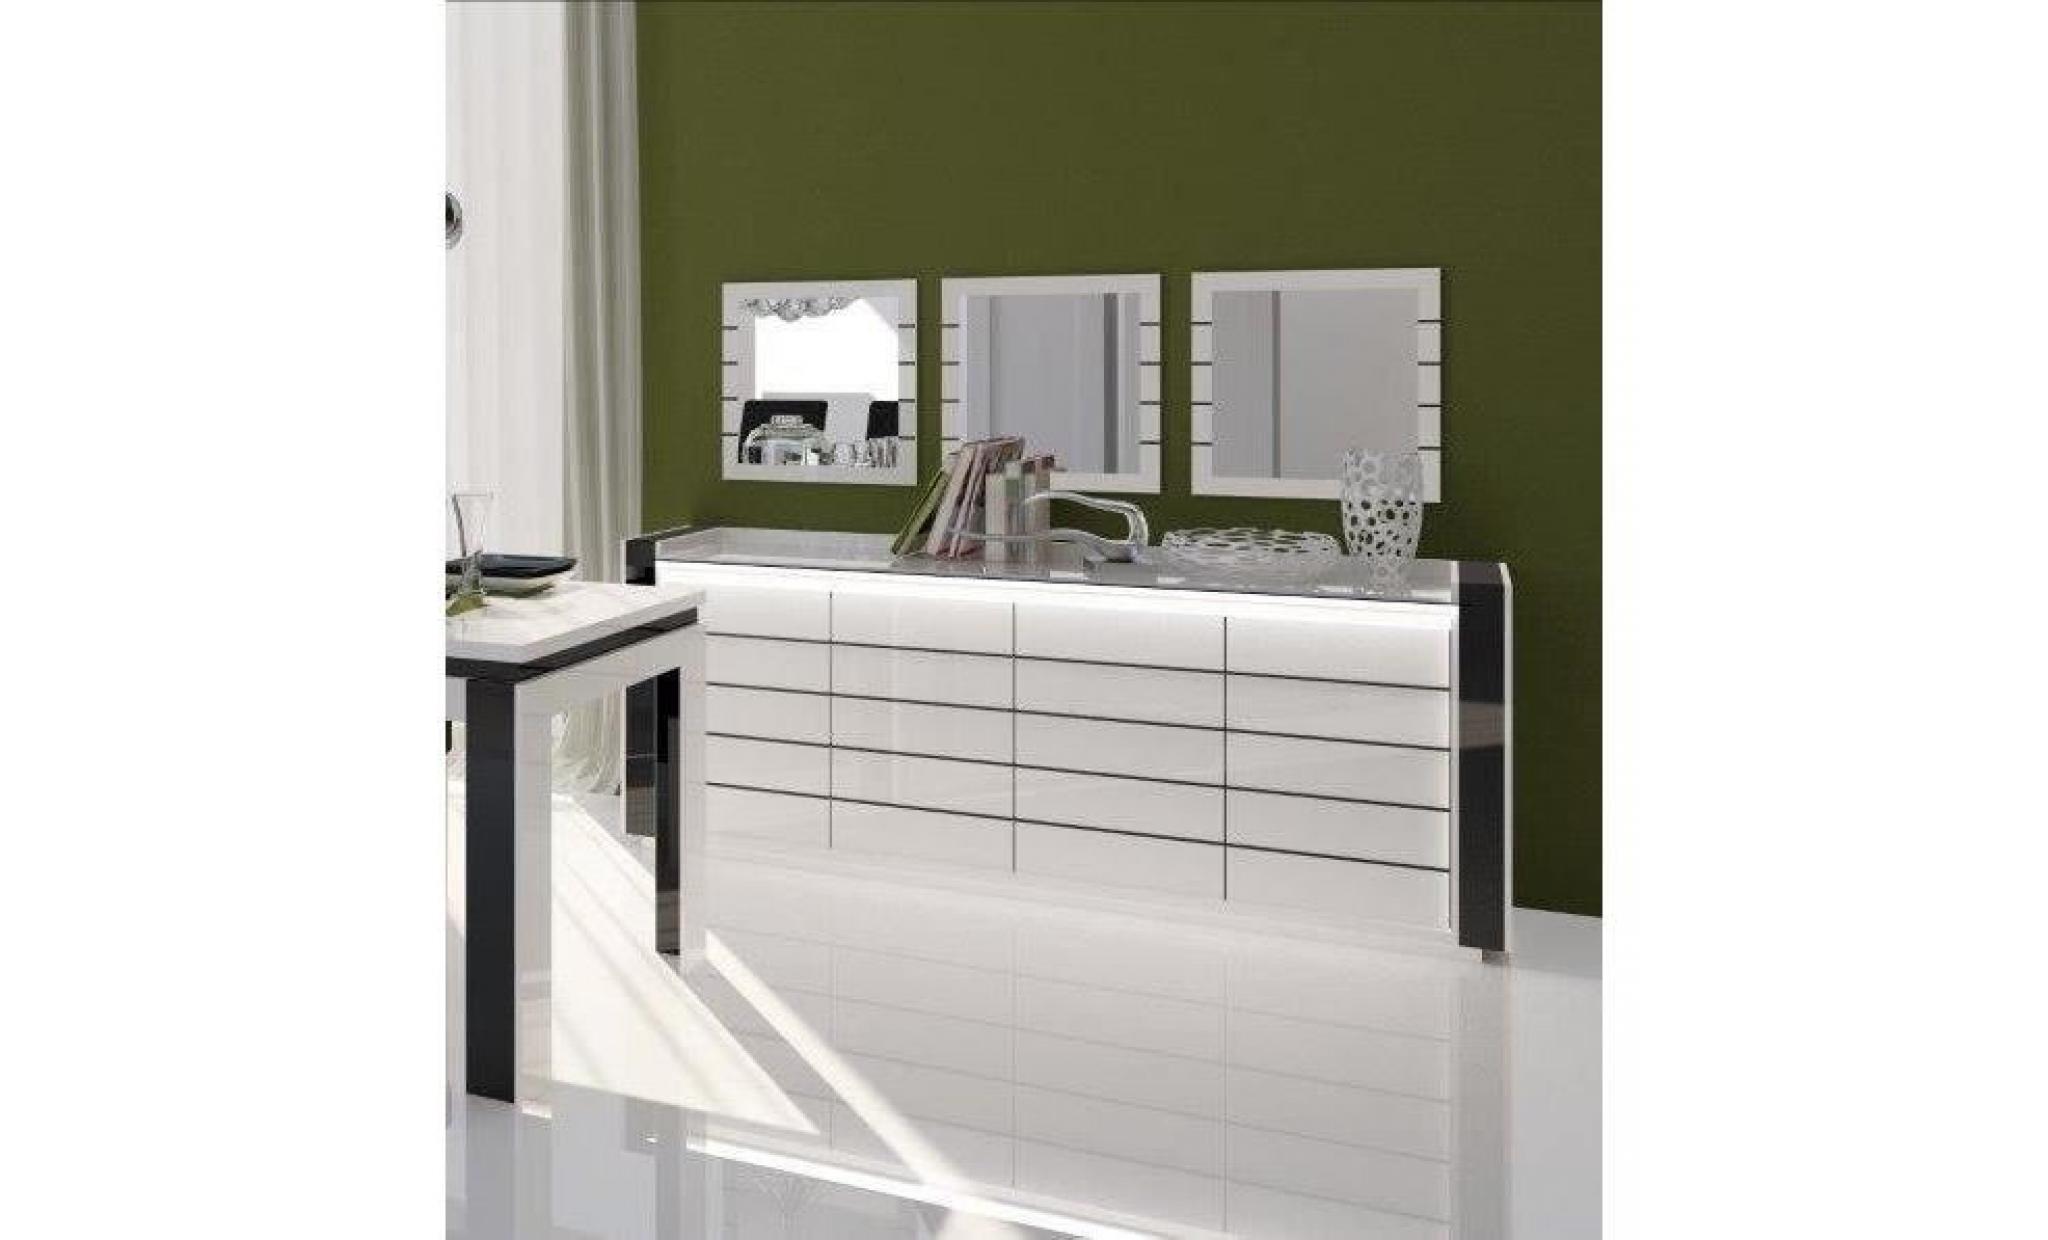 price factory   salle à manger complète lina blanche et noire. table 160 cm + buffet + 3 x miroirs + vaisselier (led) + 4 chaises pas cher